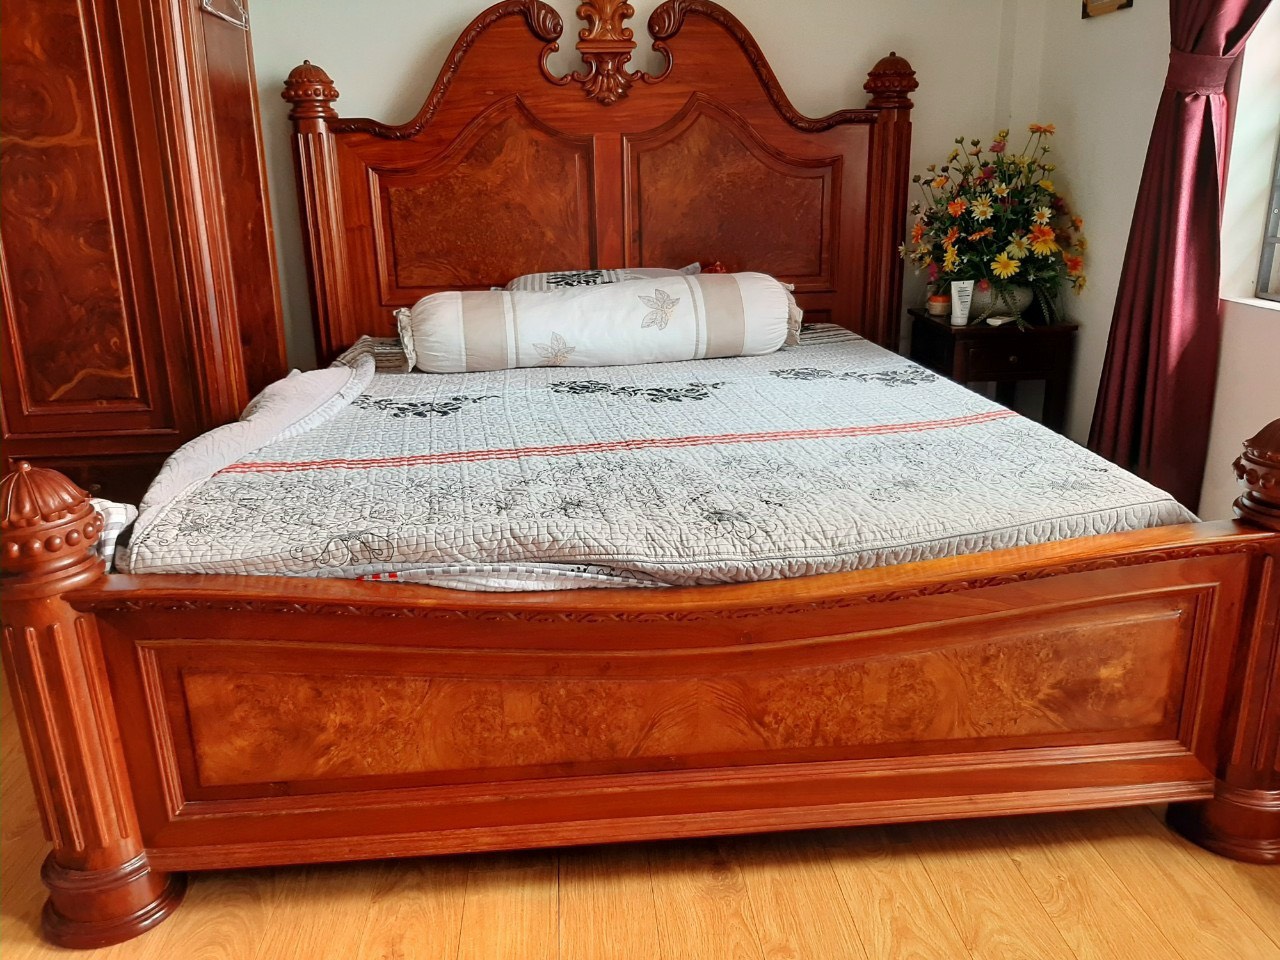 Thu mua tủ giường gỗ cũ